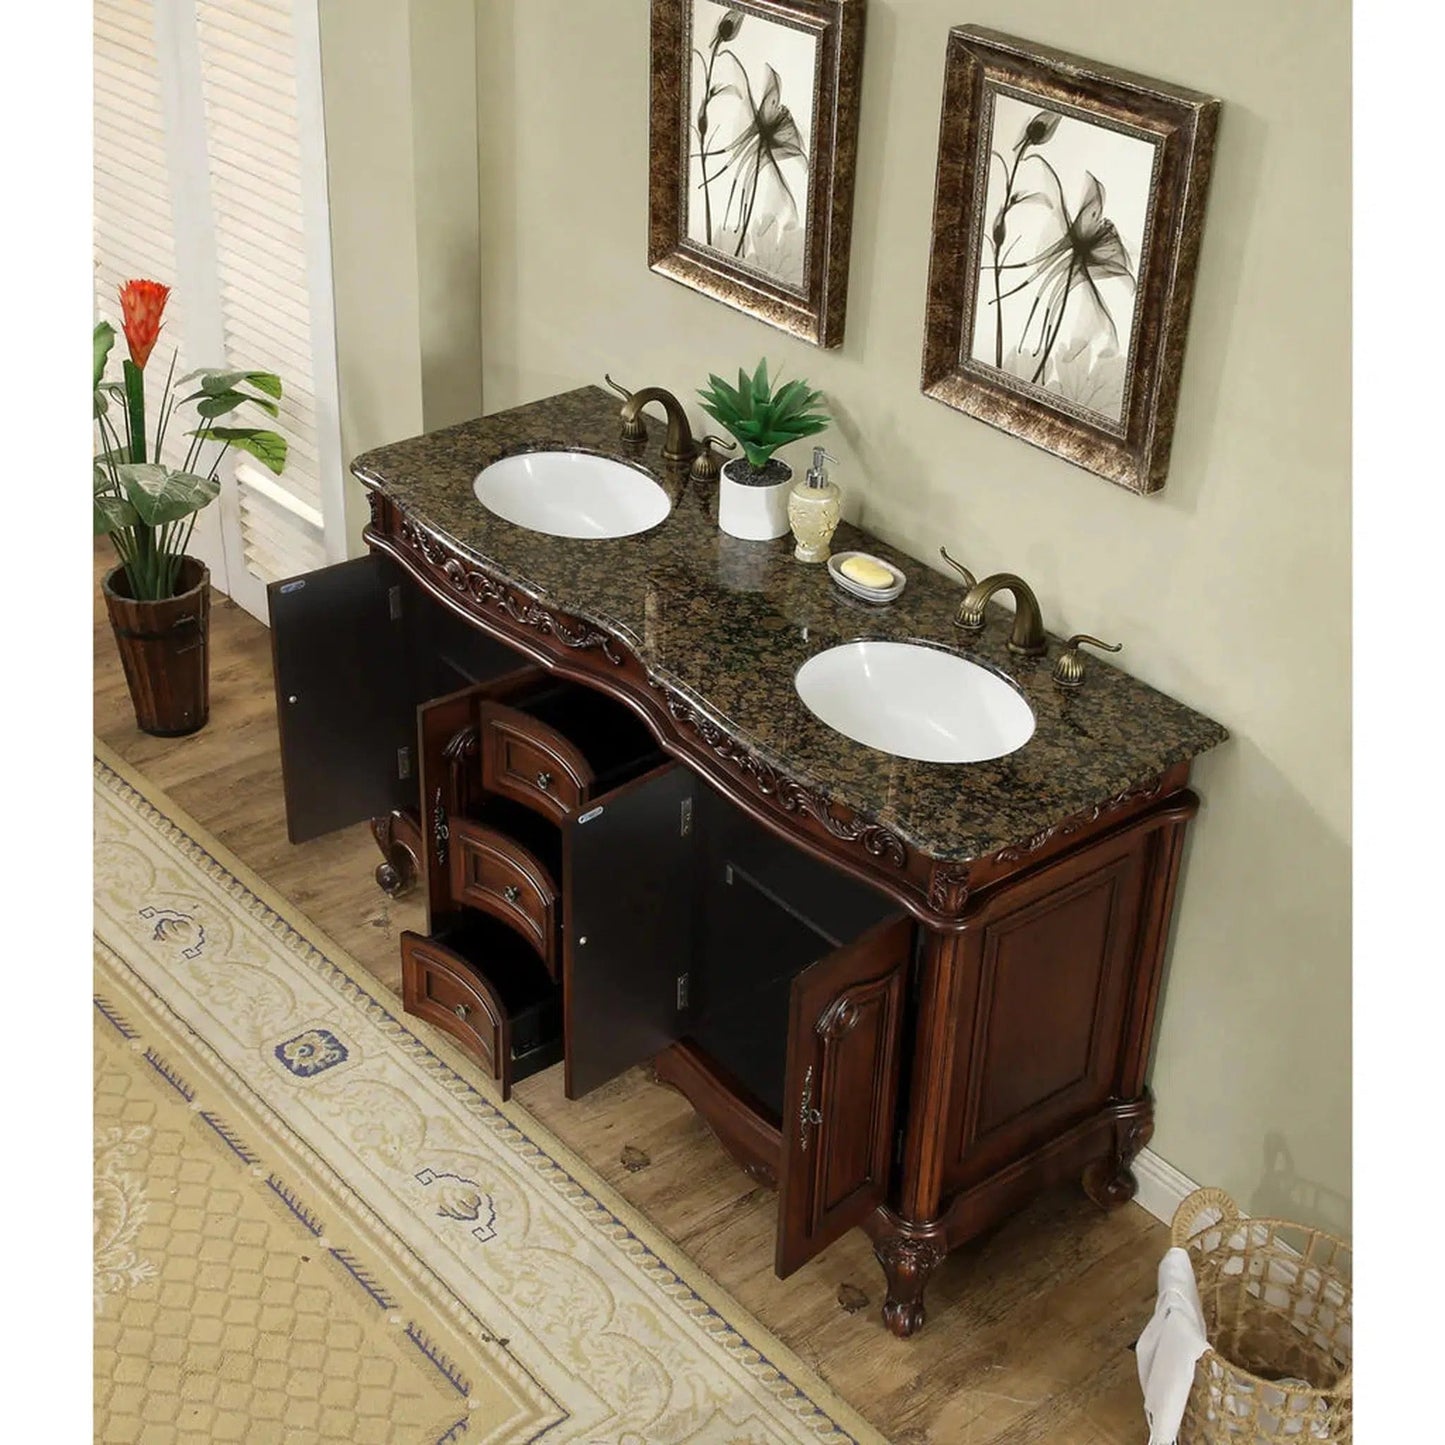 Stufurhome Cassandra 60" Dark Cherry Freestanding Bathroom Vanity With Oval Double Sinks, Baltic Brown Granite Countertop, 3 Drawers, 4 Doors and Widespread Faucet Holes